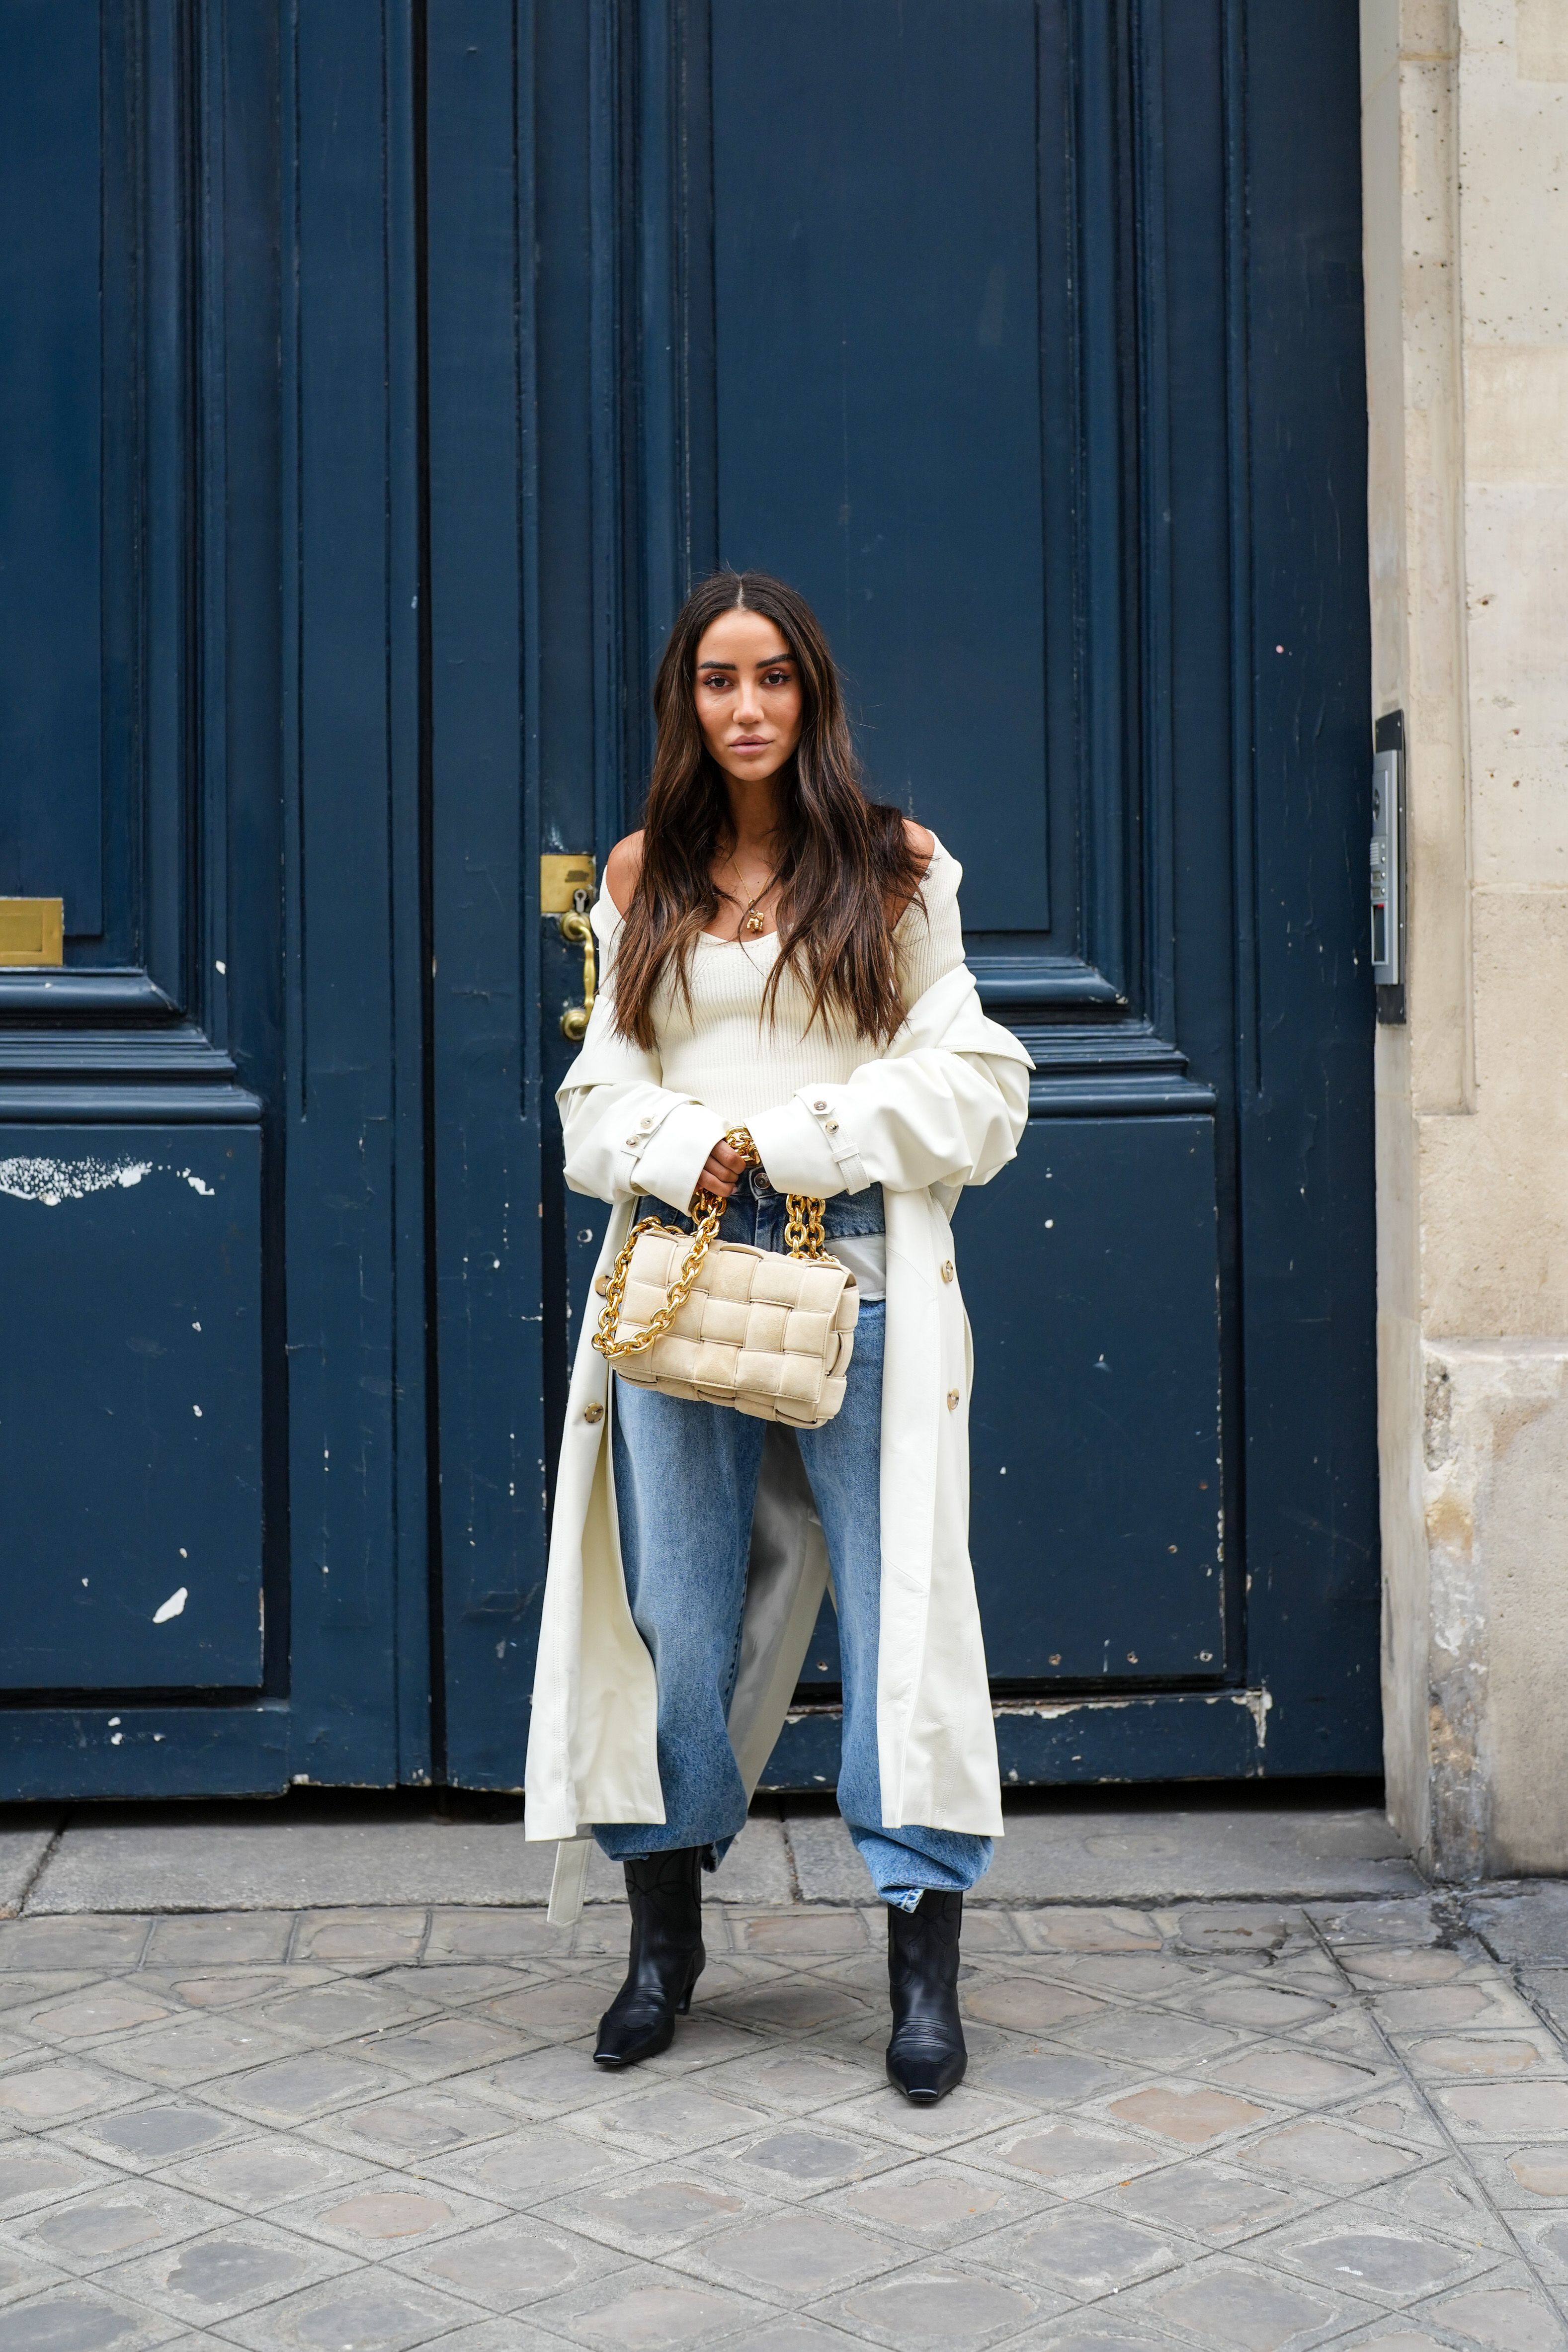 Cómo combinar un abrigo blanco: 20 ideas de 'looks'